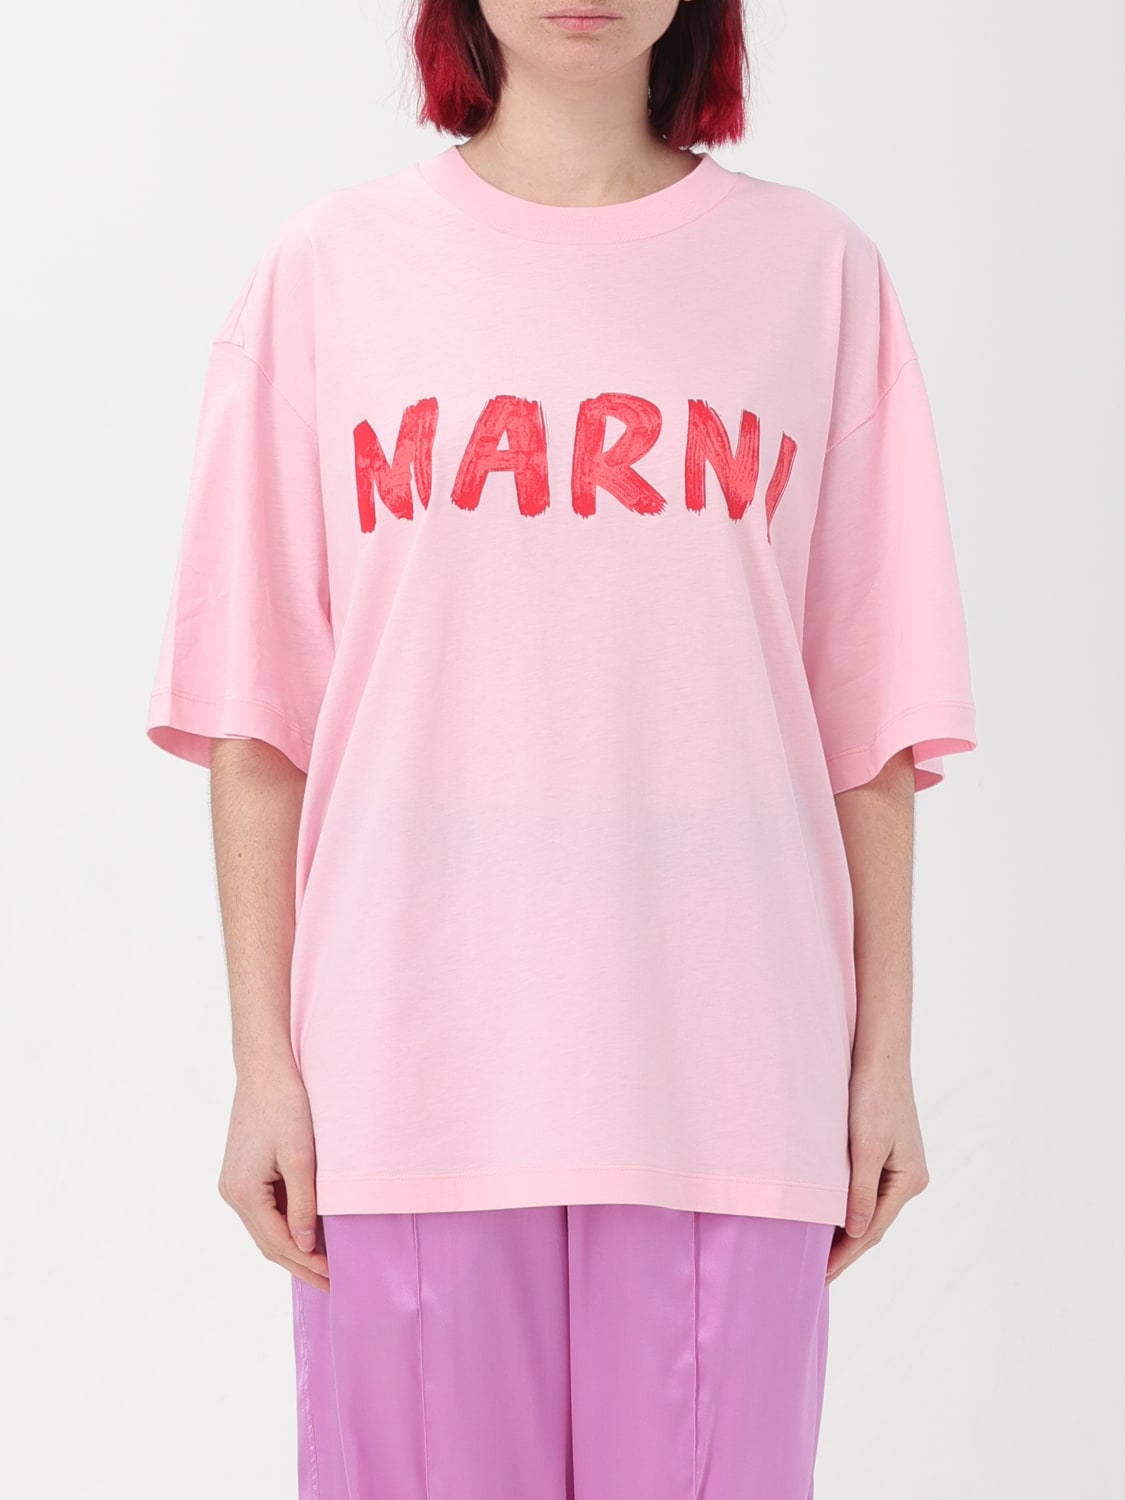 ショッピング人気商品 MARNI マルニ ネイビー Navy Tシャツ レディース ...